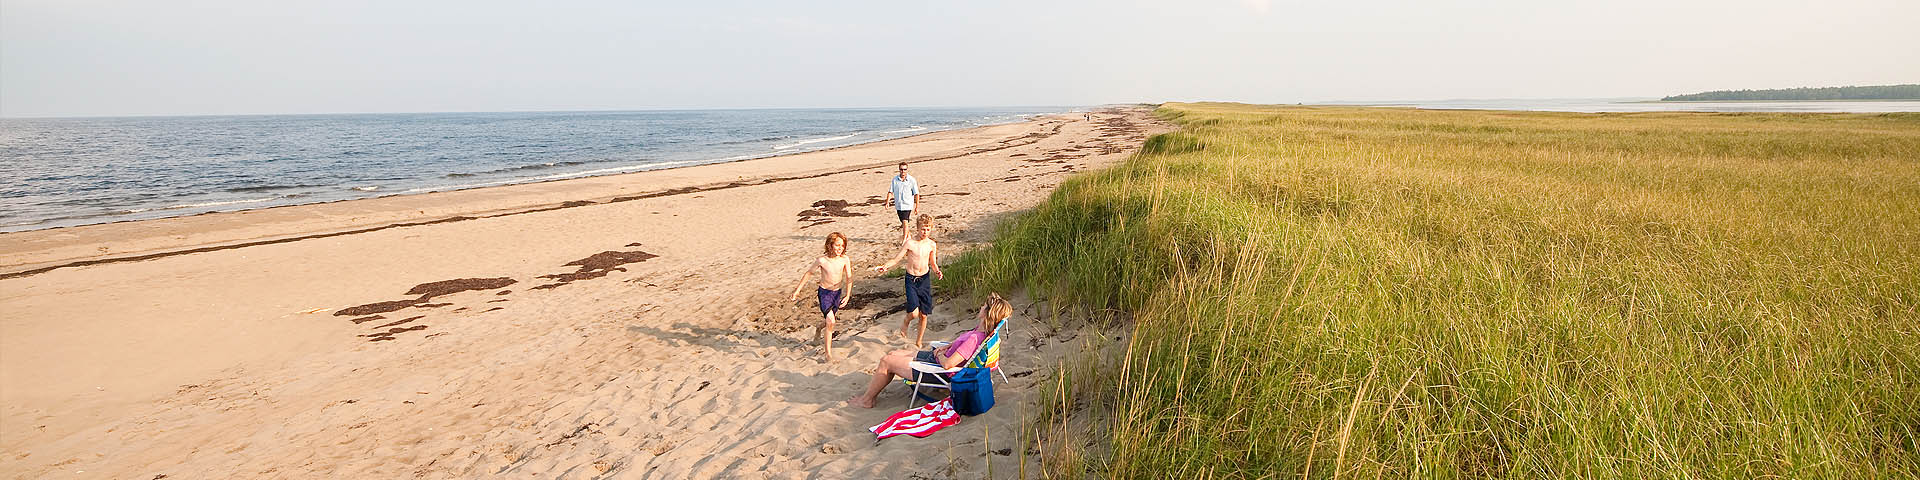 A family on a dune beach